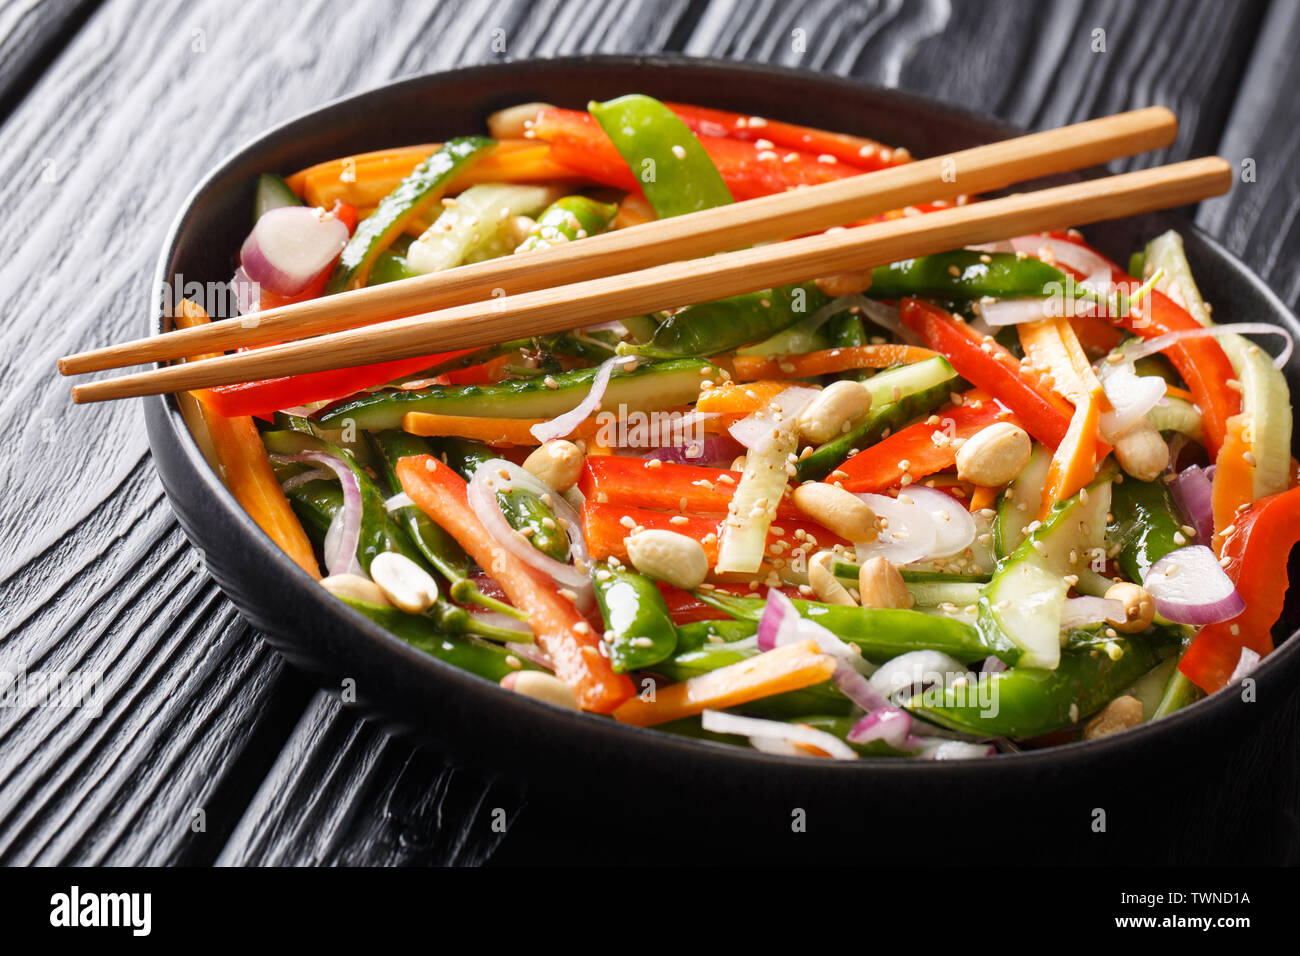 Salat mit Gurken, Paprika, Karotten, pea Pods mit Sesam und Erdnüsse close-up auf einem Teller auf den Tisch. Horizontale Stockfoto